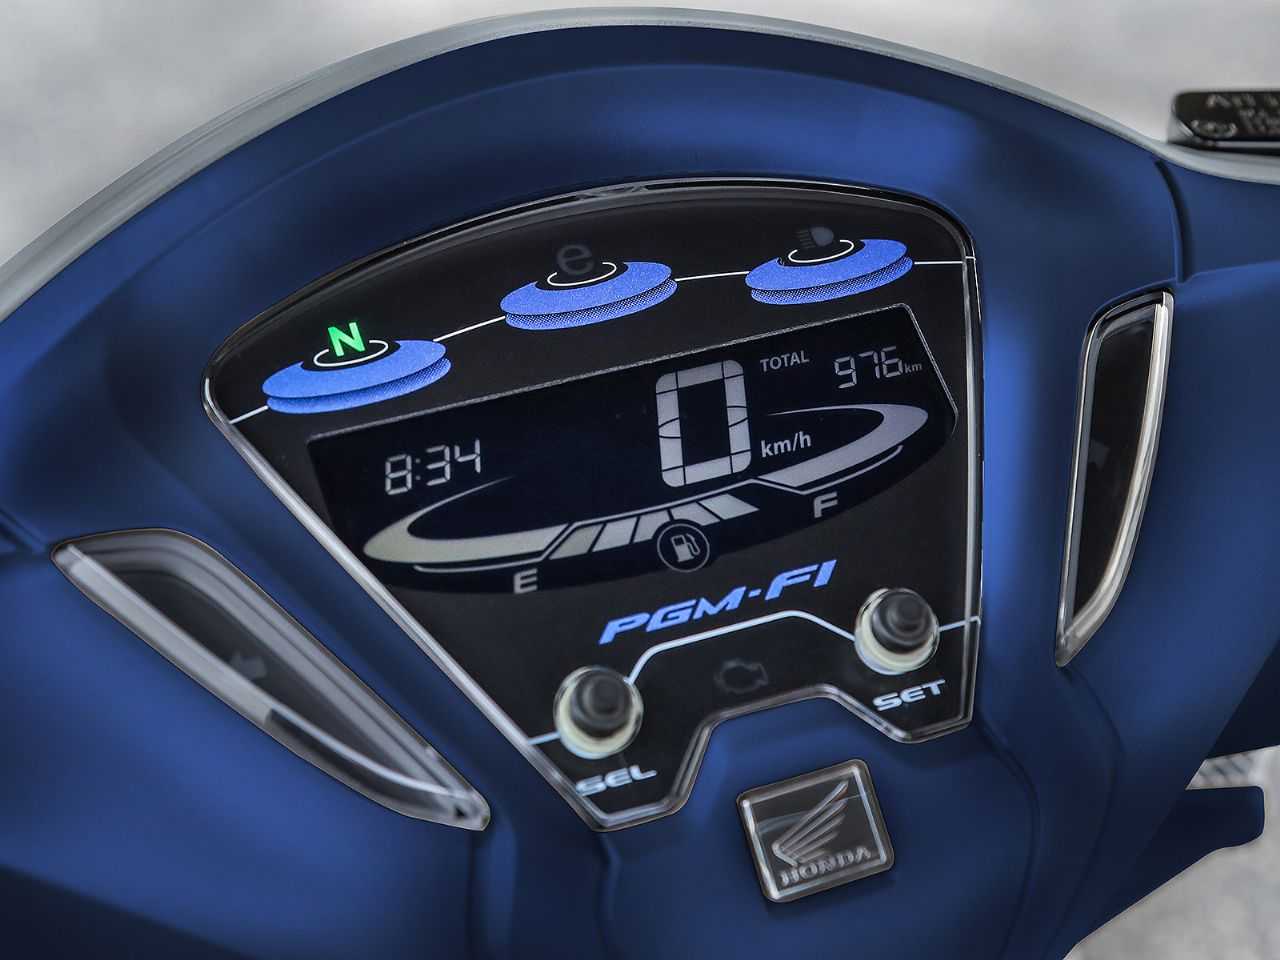 HondaBiz 125 2020 - painel